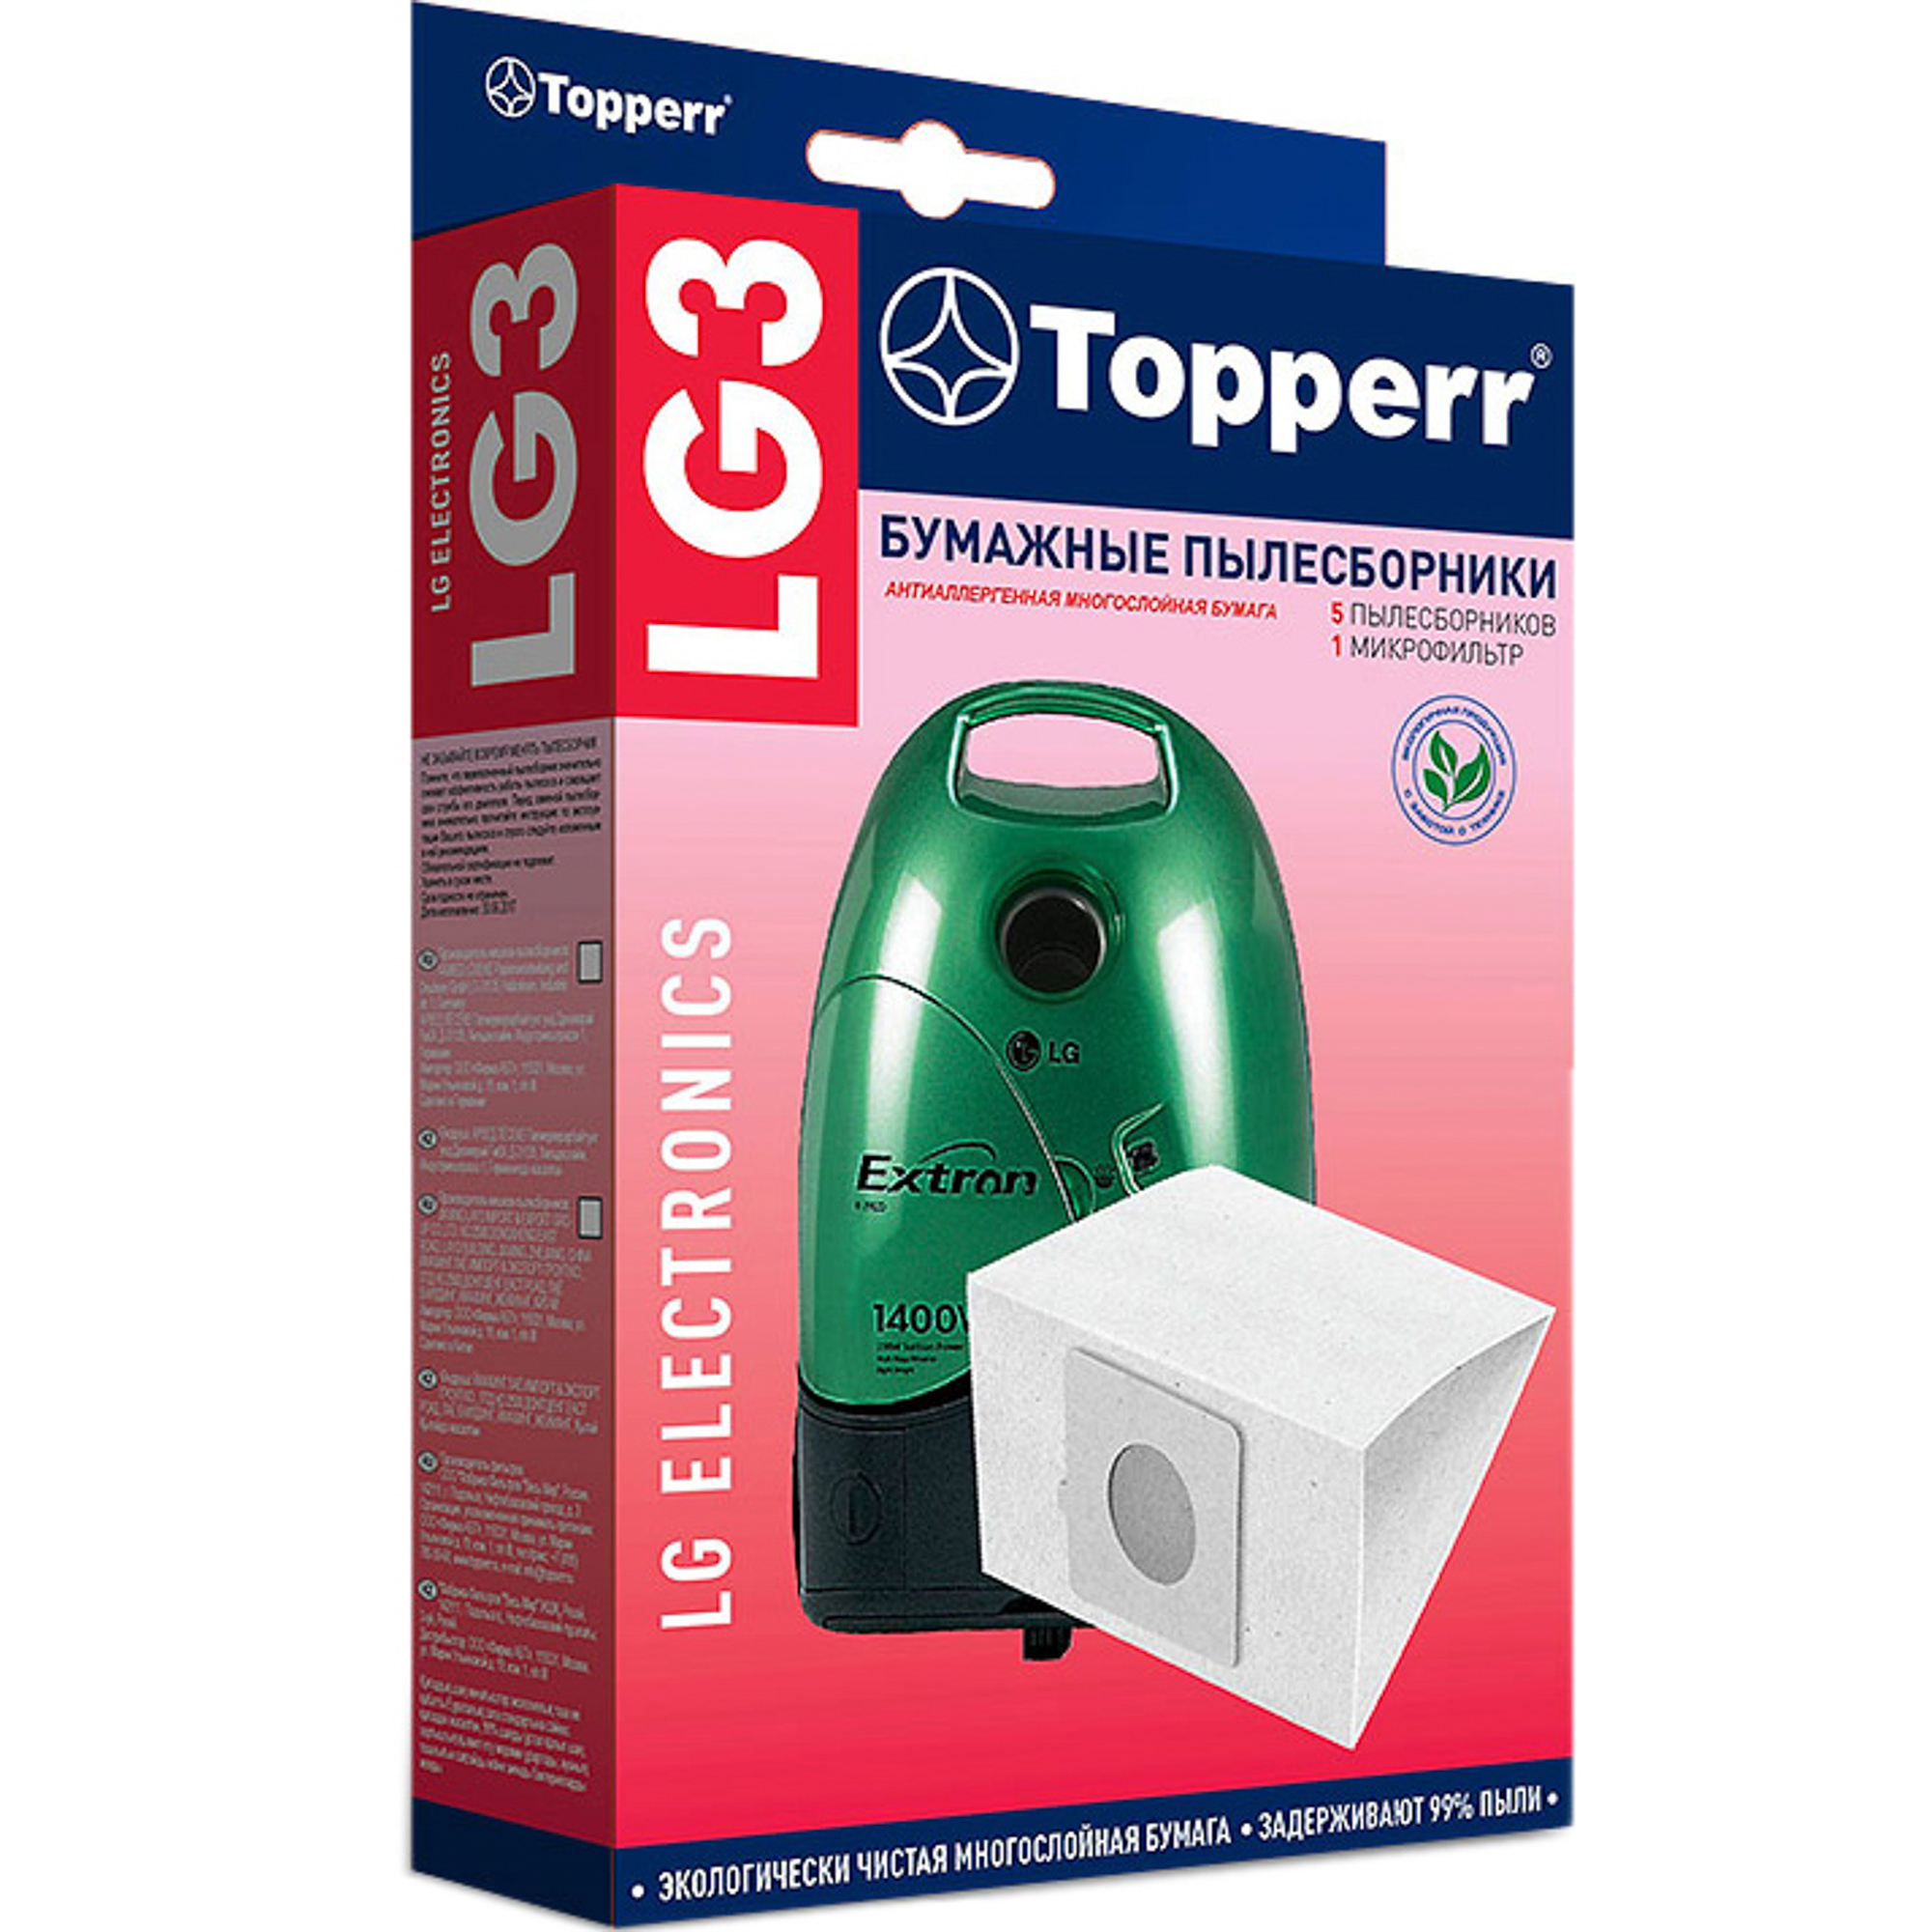 Пылесборник Topperr LG3 topperr бумажные пылесборники lg3 бежевый 5 шт